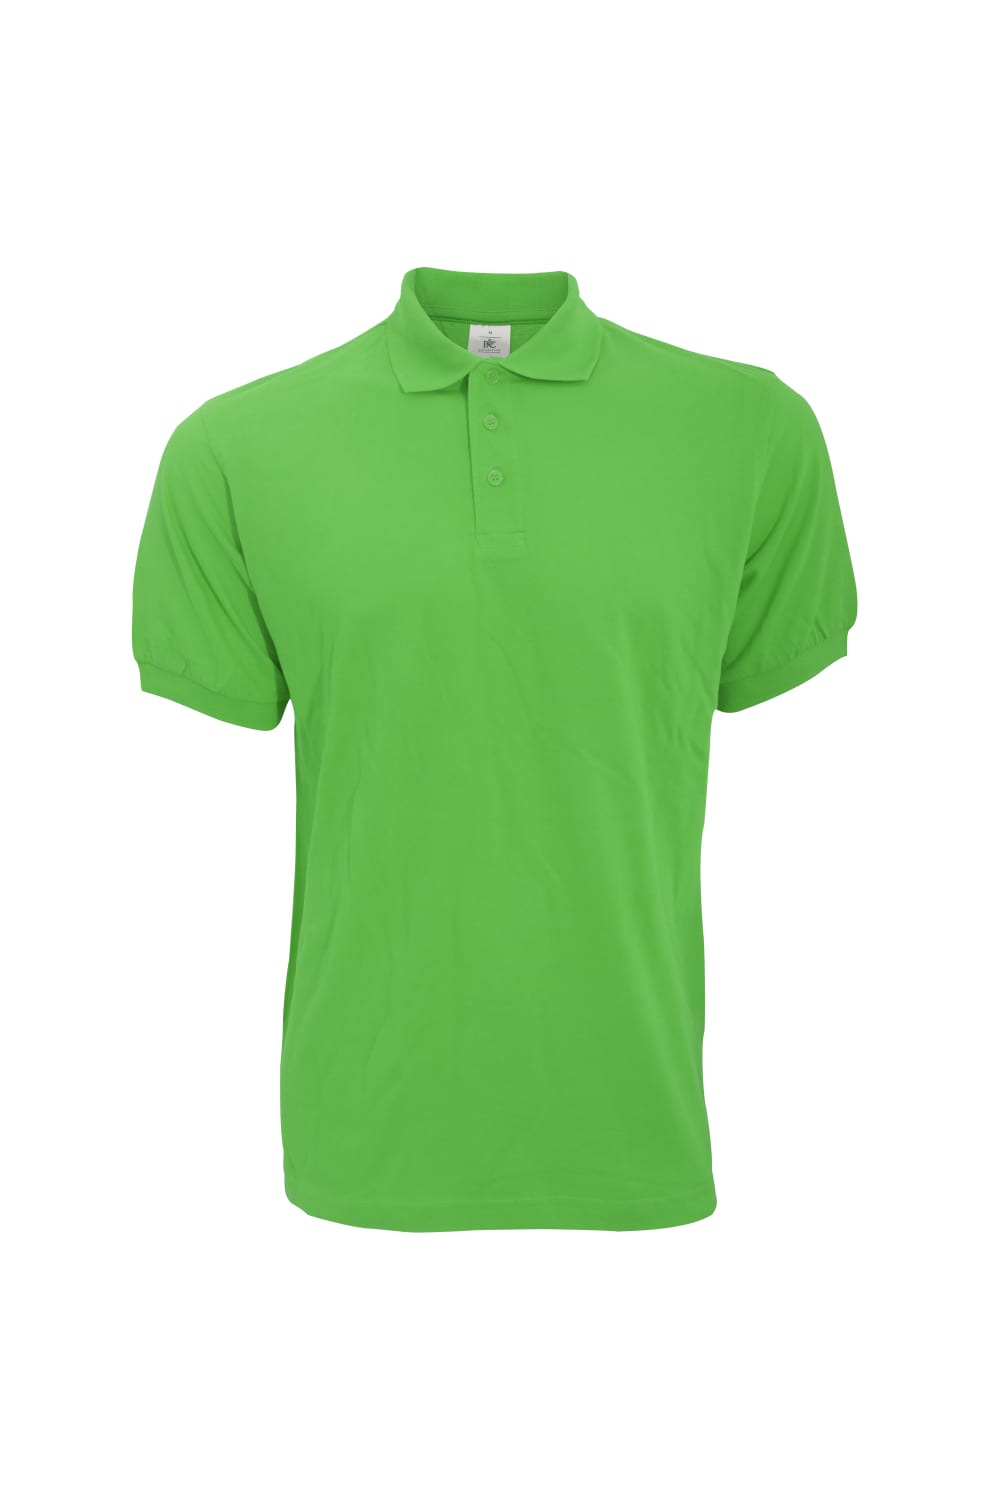 B&C Safran Mens Polo Shirt / Mens Short Sleeve Polo Shirts (Real Green)